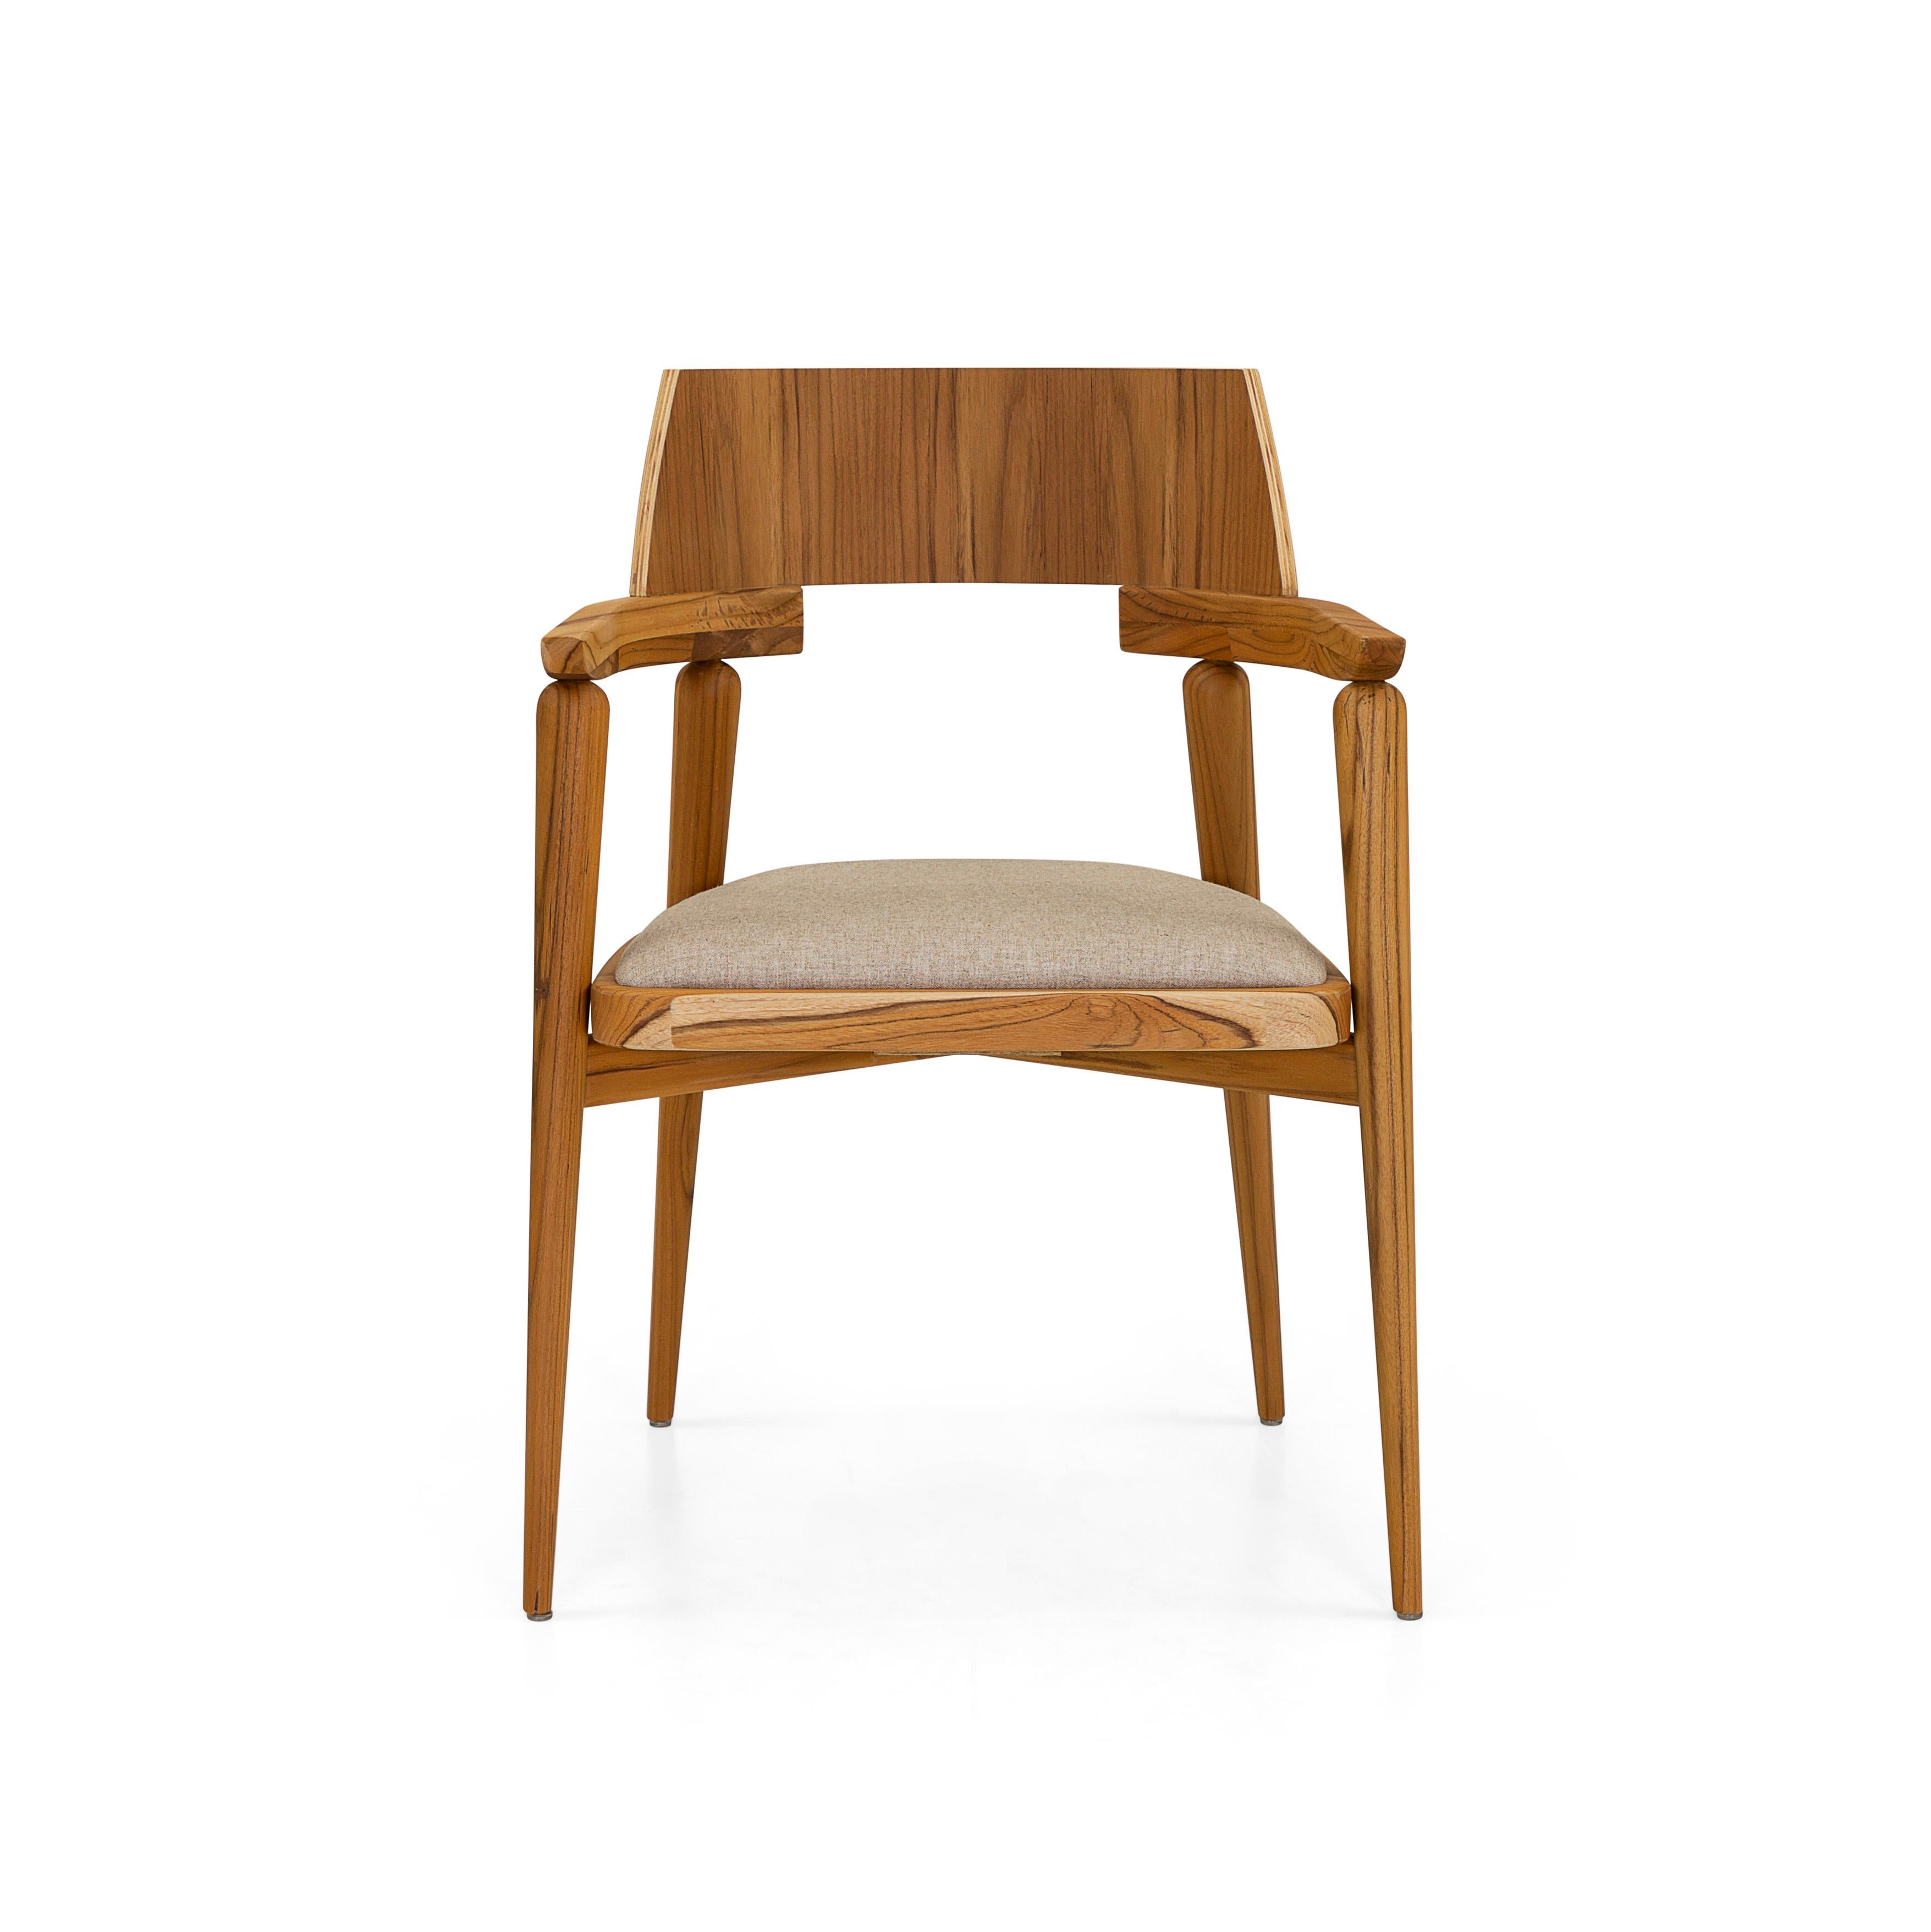 La chaise de bureau et de salle à manger Bone est une autre pièce d'Uultis qui allie style et fonctionnalité avec sa structure en bois massif dans une finition teck, le dossier en feuille multi-laminée à courbure anatomique et une assise en mousse